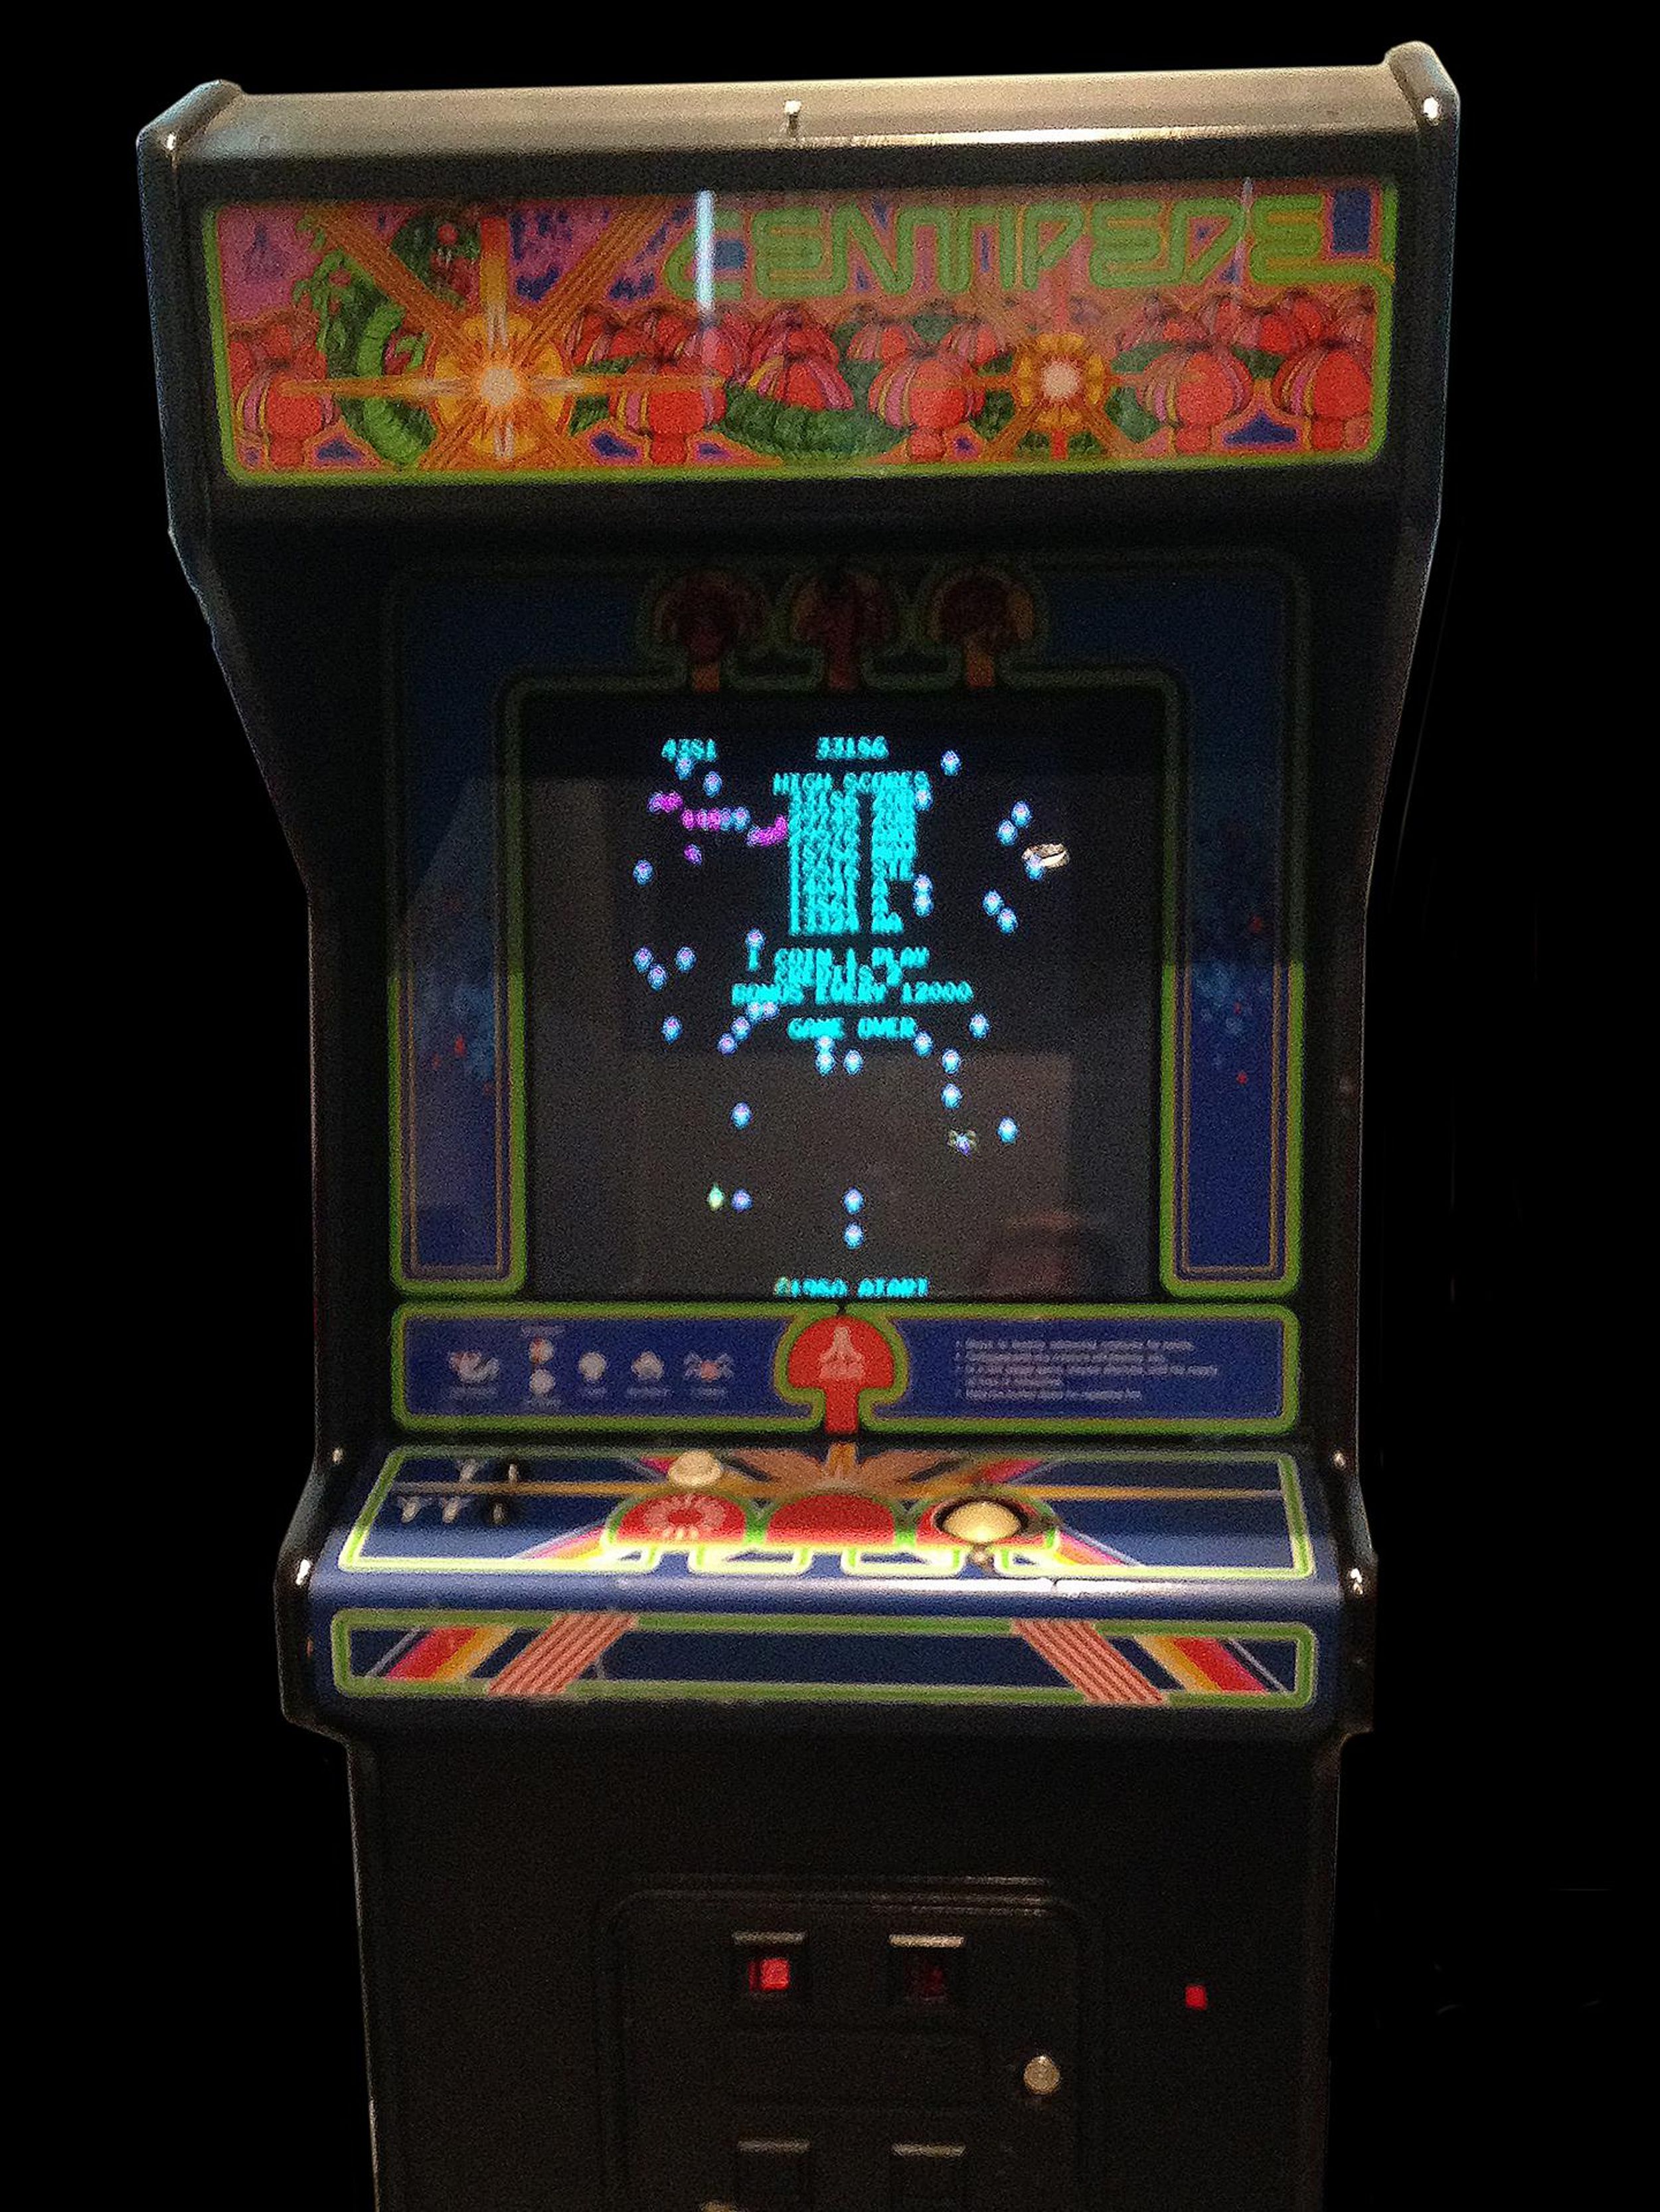 Centipede coin-op arcade game